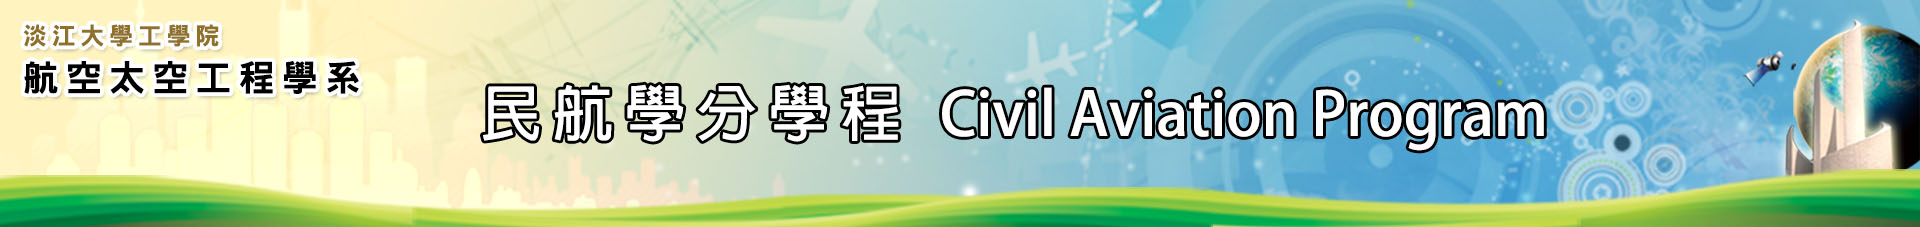 民航學分學程logo